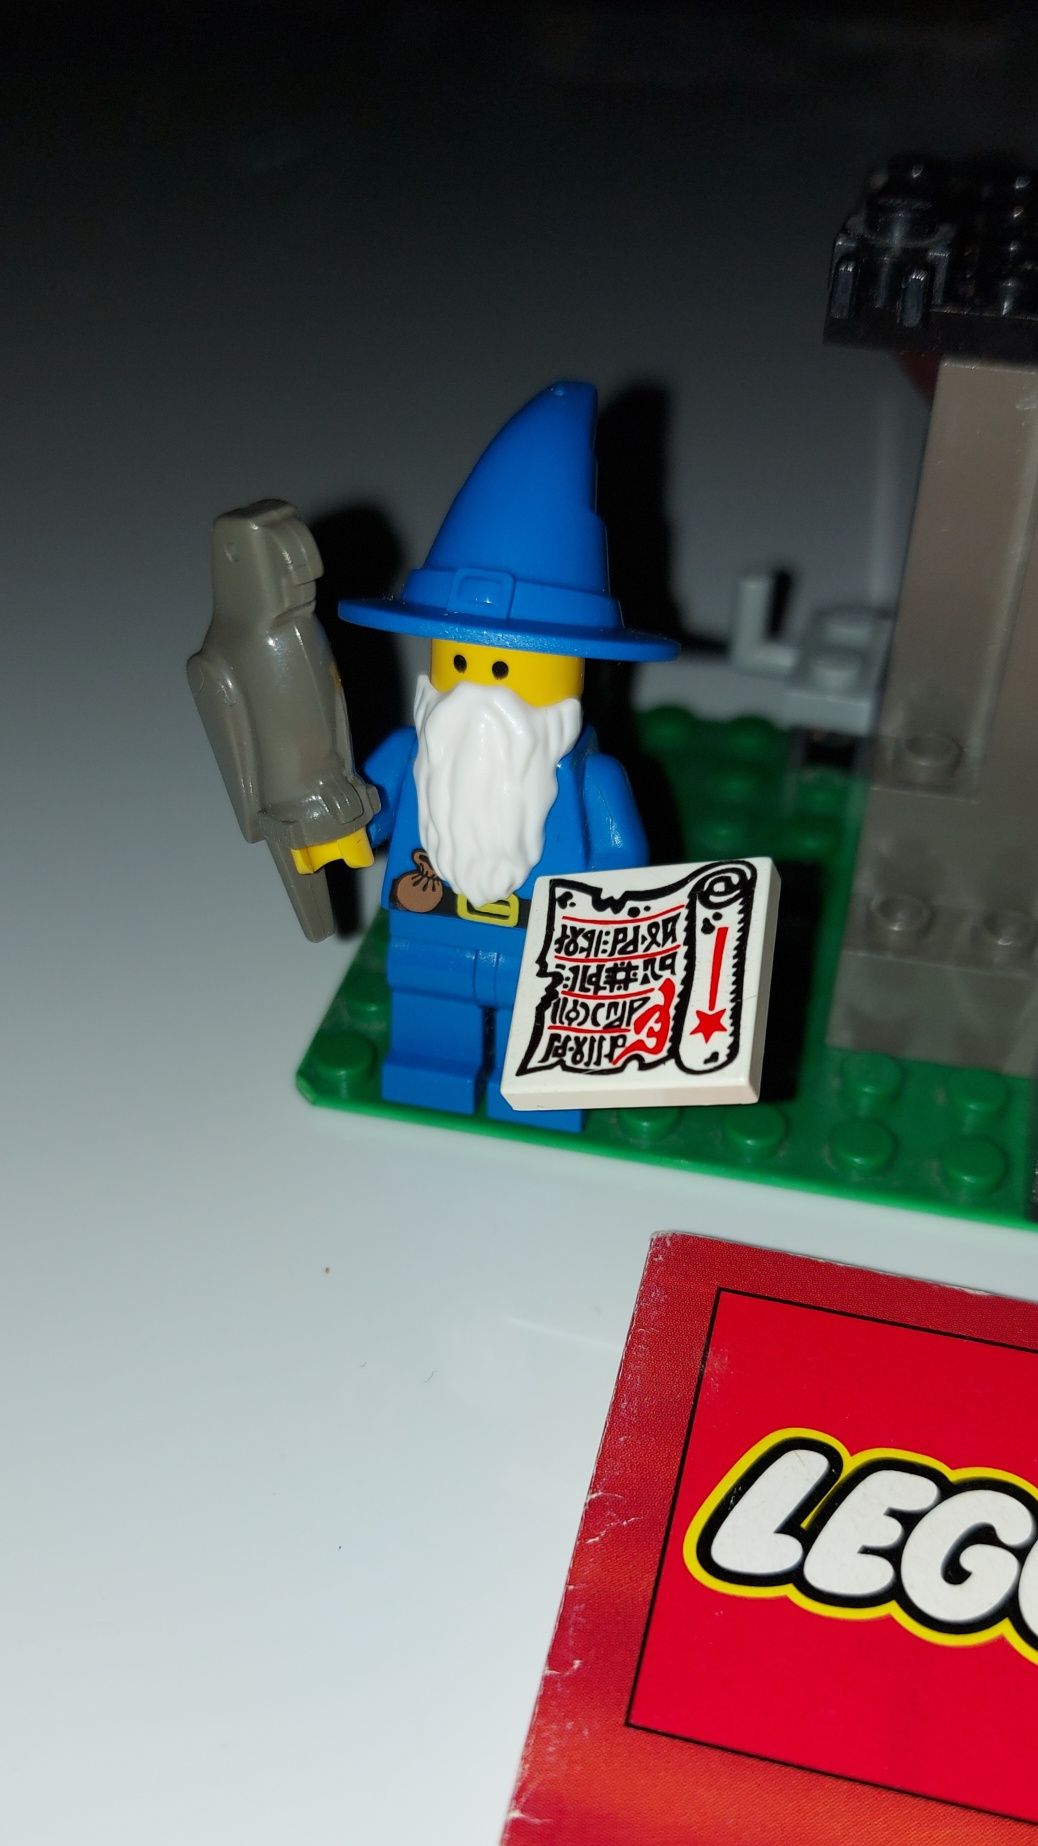 Lego 6048 Laboratorium Majisto Dragon Rycerze Smoka+ Instrukcja